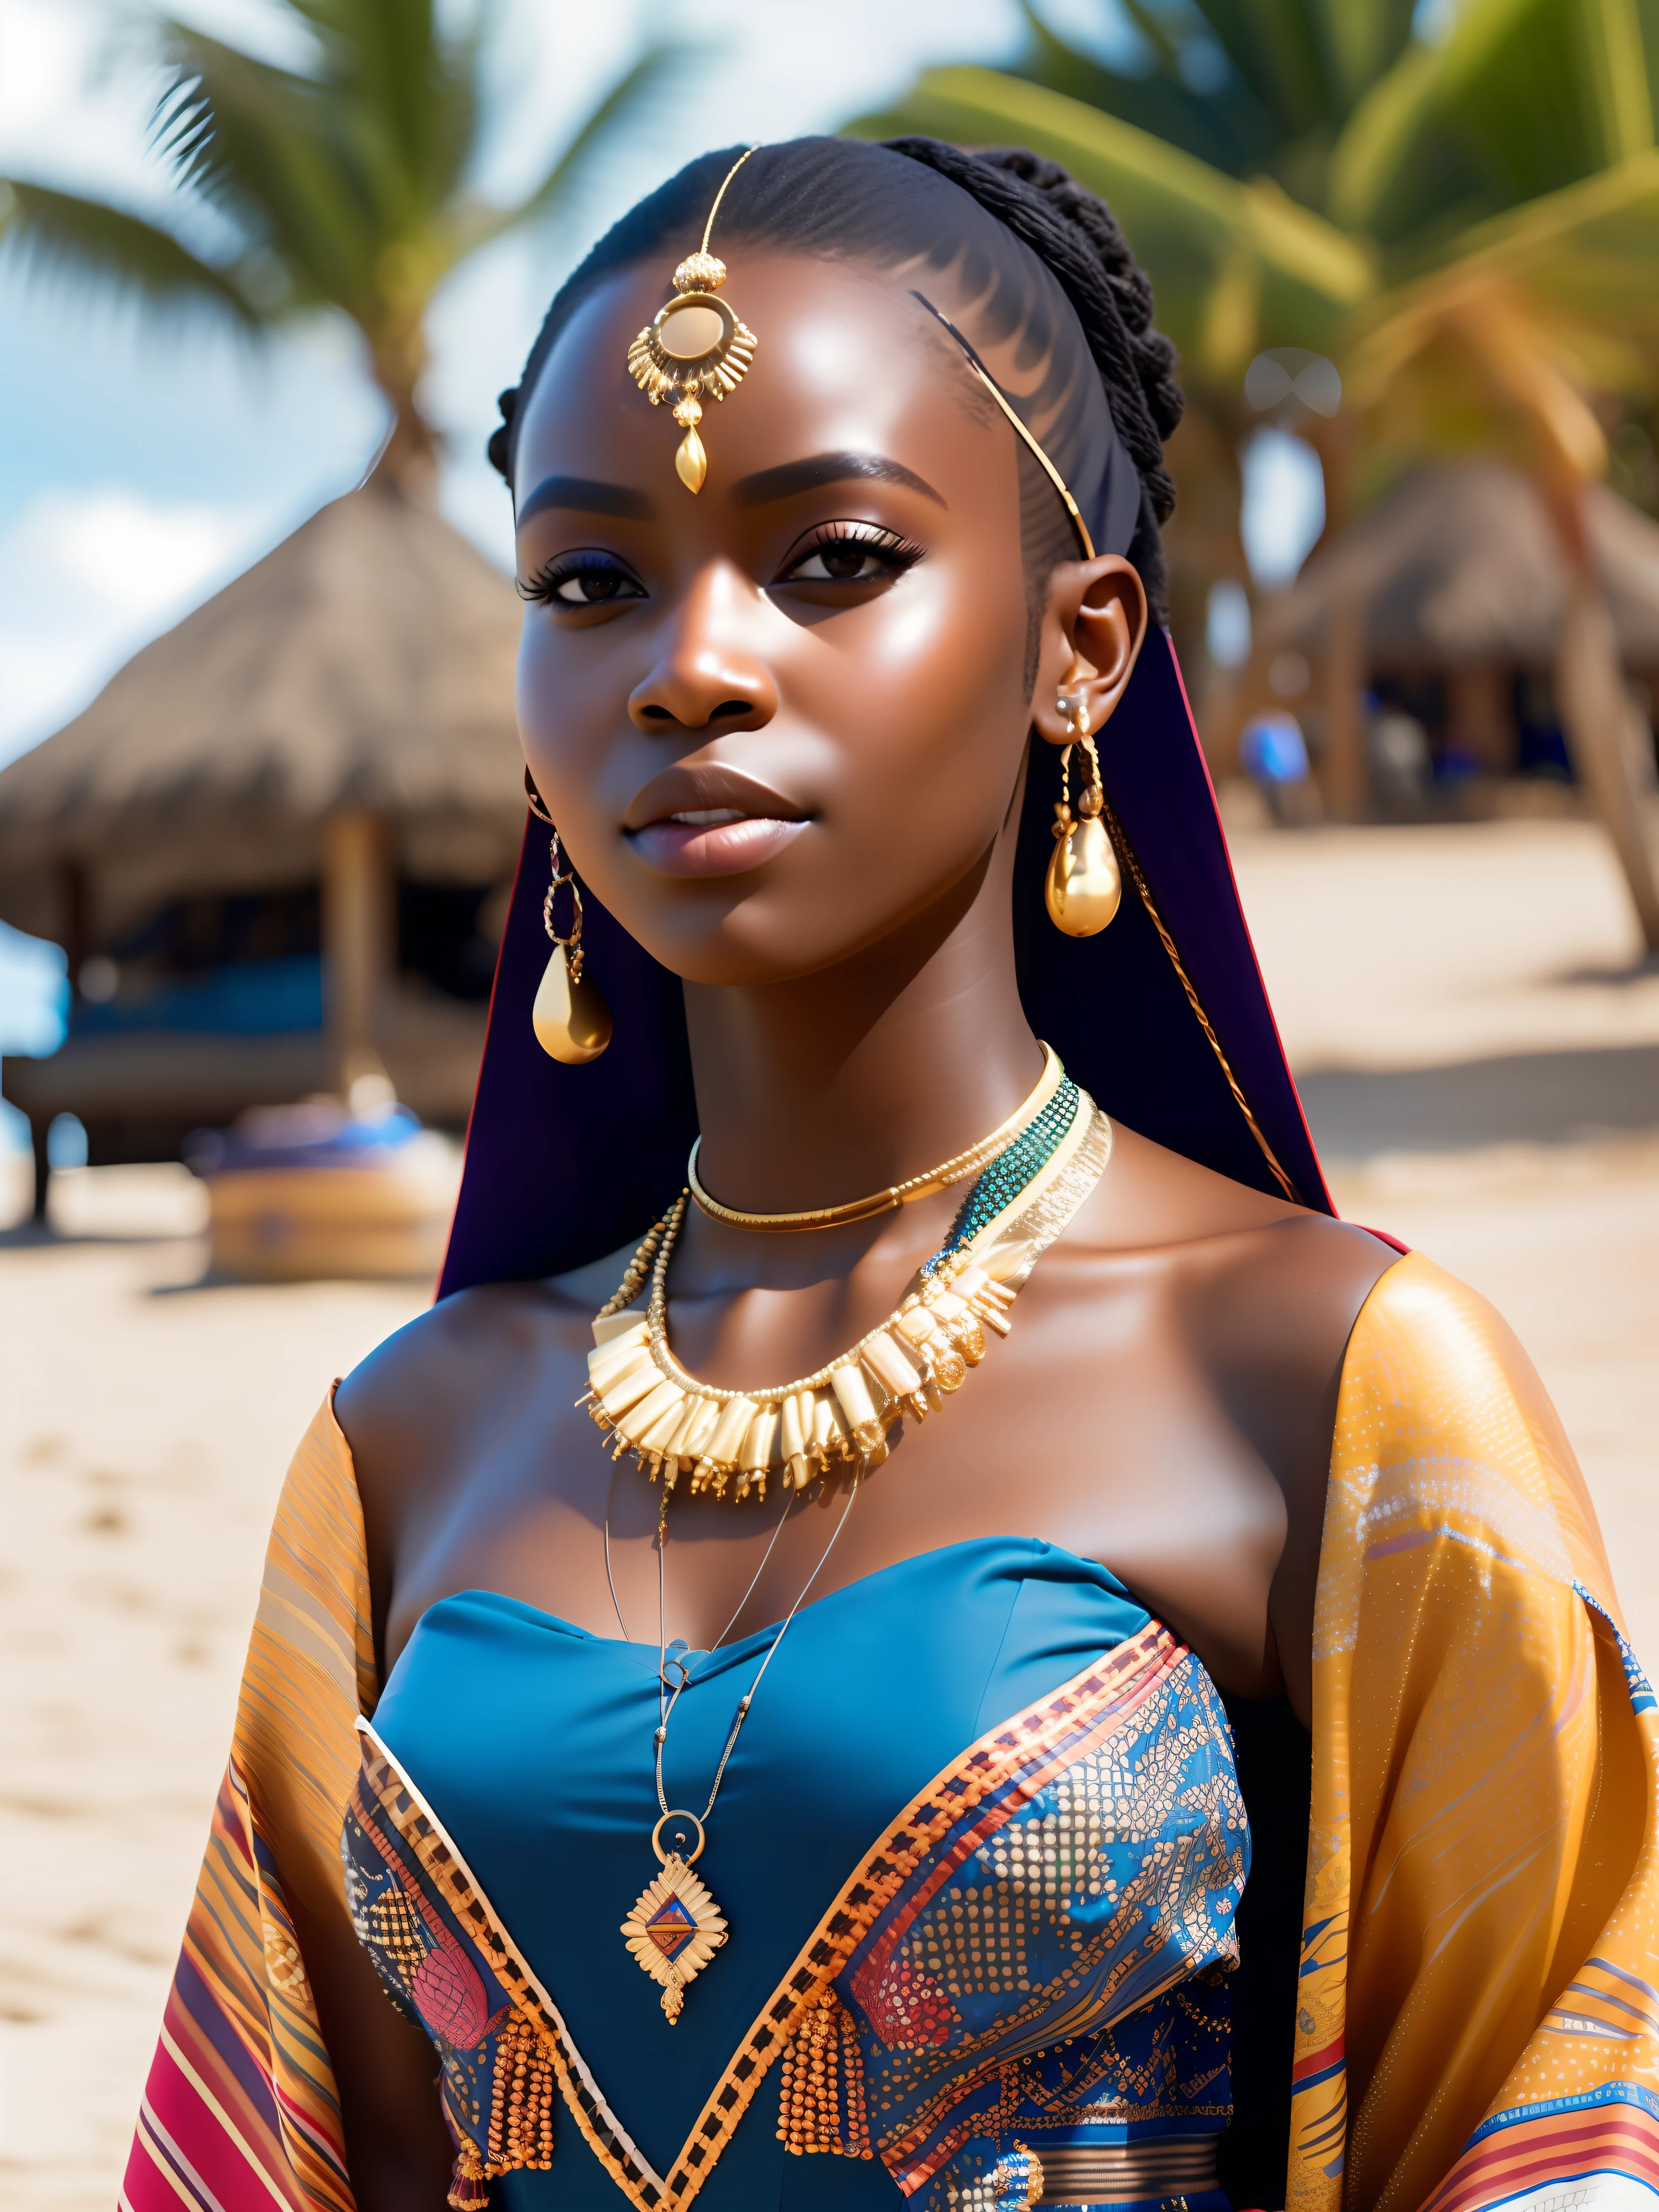 빌어먹을_공상 과학, 빌어먹을_공상 과학_v2, 해변 앞에 있는 매우 아름다운 젊은 아프리카 여성의 초상화, 풍부하고 화려한 옷, 황금 아프리카 보석, 확대, 왕실의 자세와 태도. 빌어먹을_영화_v2. 빌어먹을_영화_v2